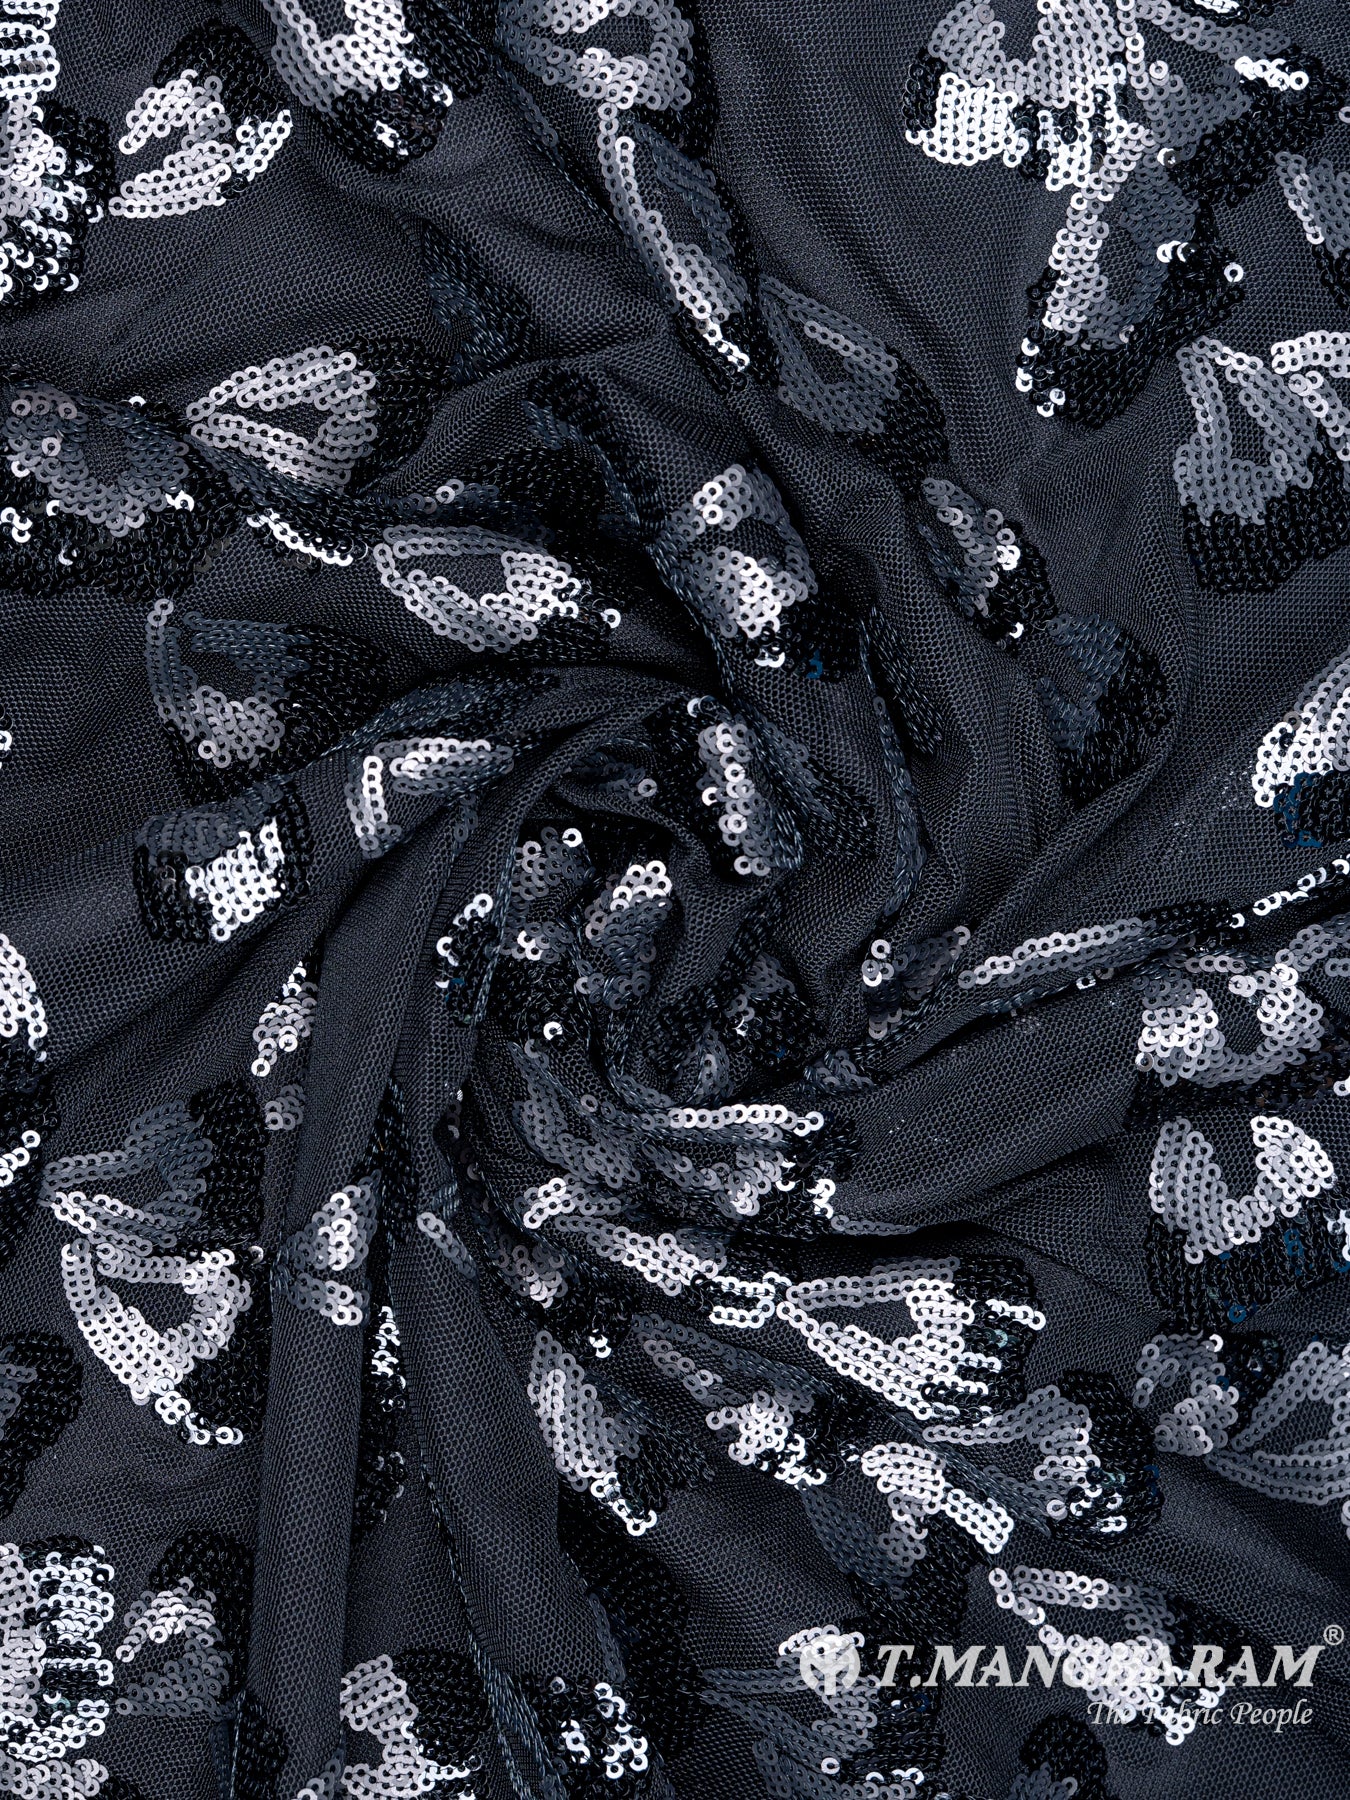 Black Fancy Net Fabric - EC4443 view-1